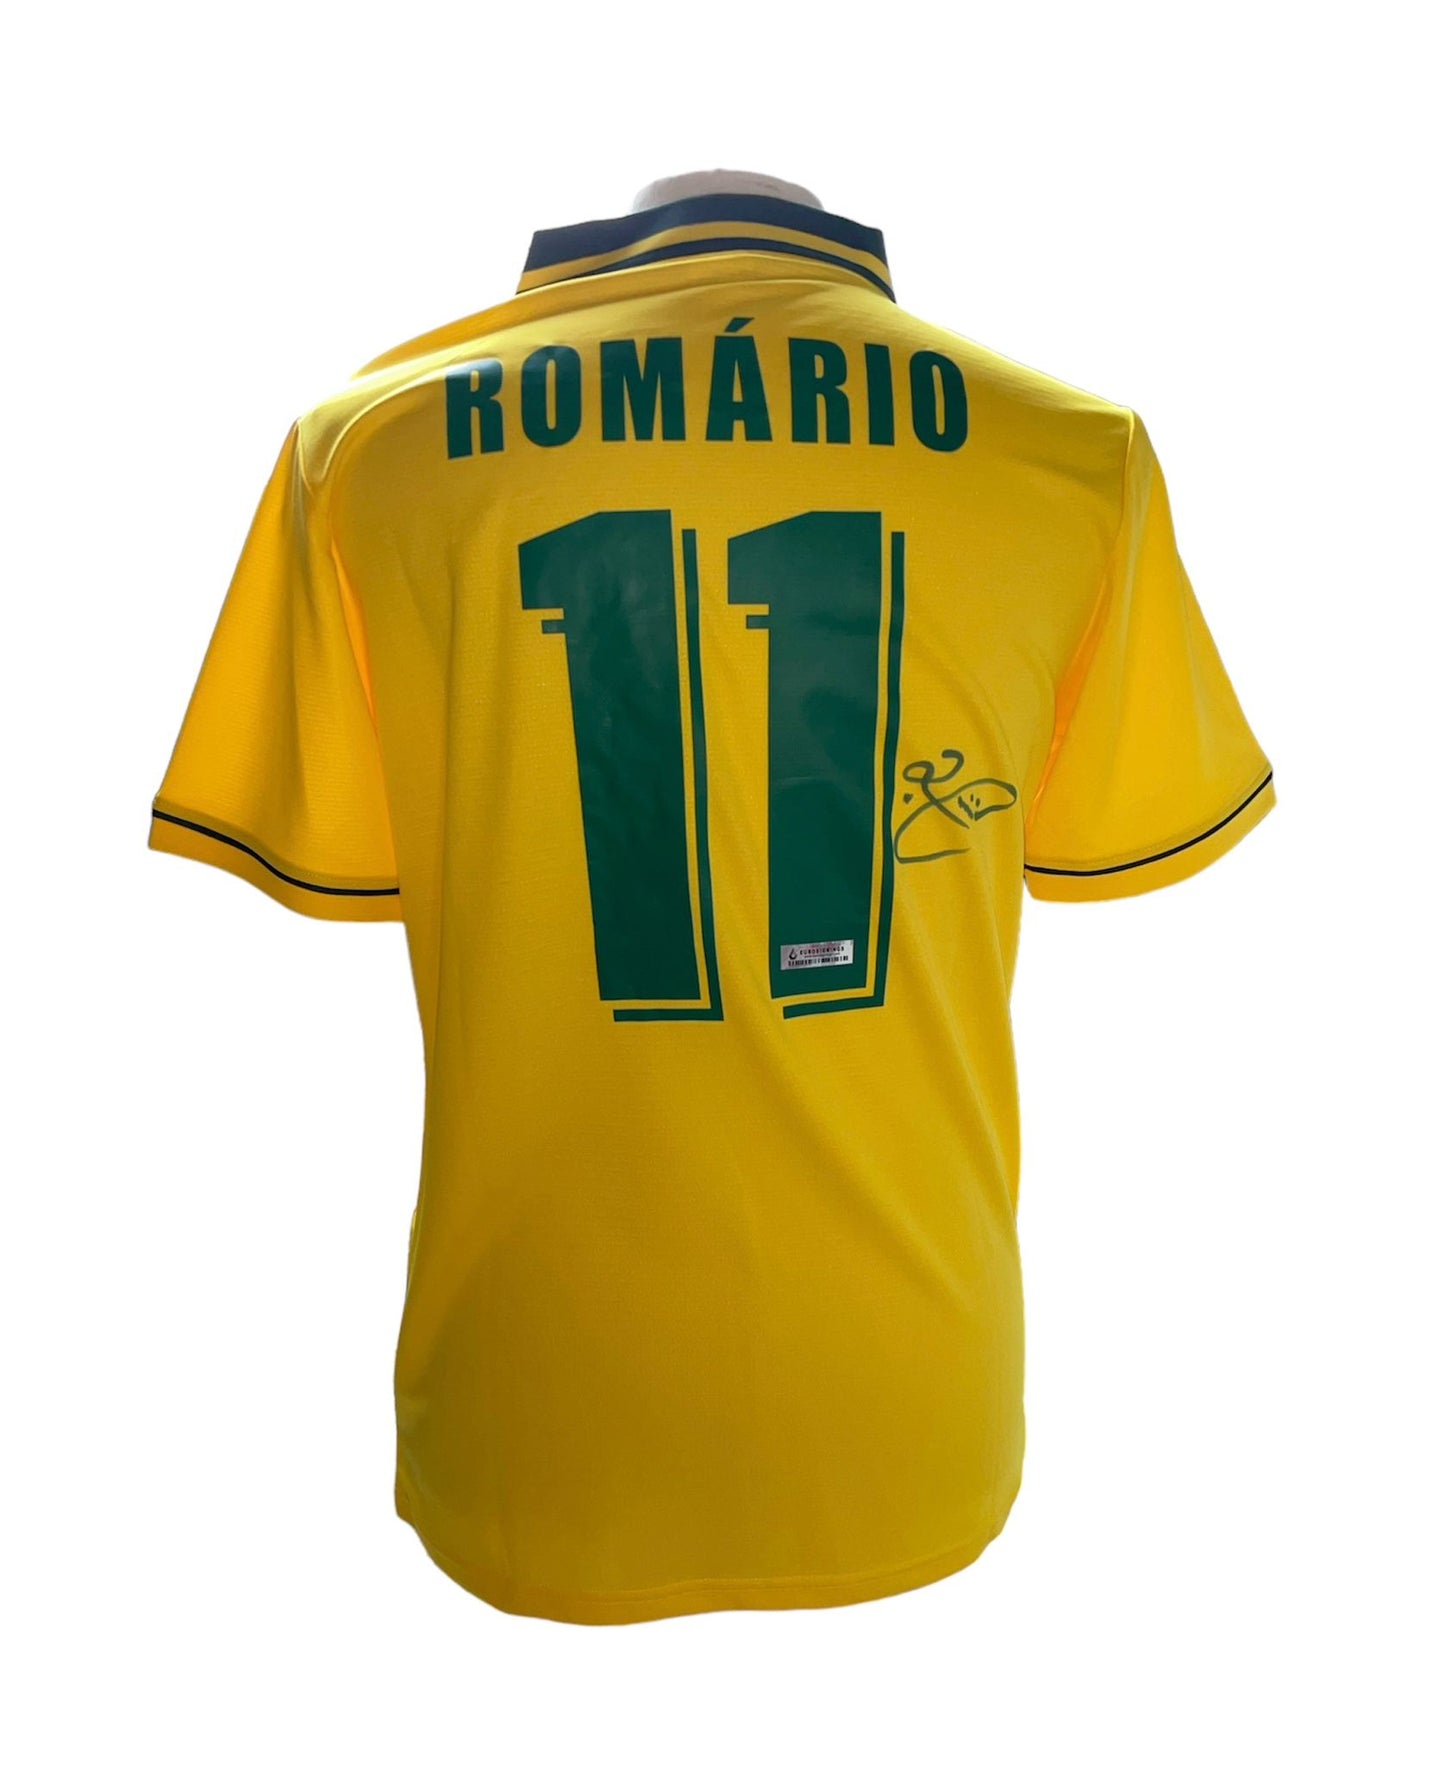 Romário gesigneerd Brazilië 1994 shirt met certificaat